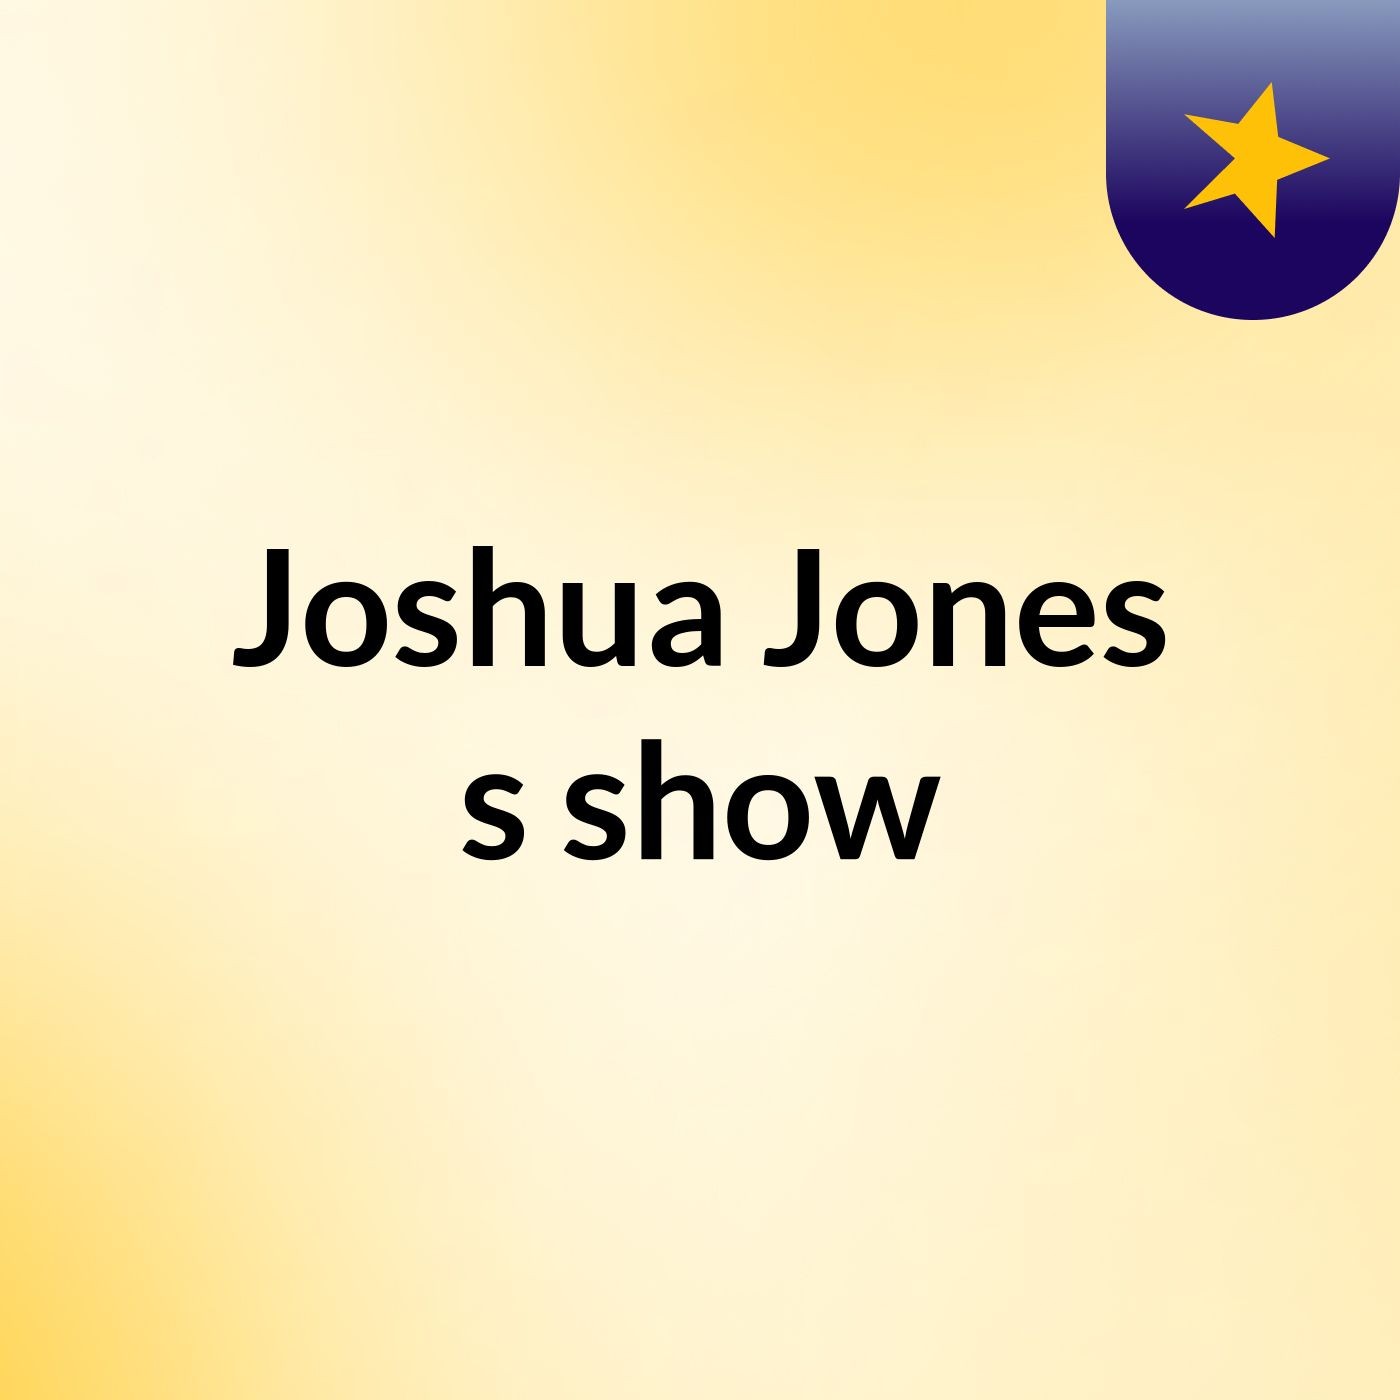 Joshua Jones's show